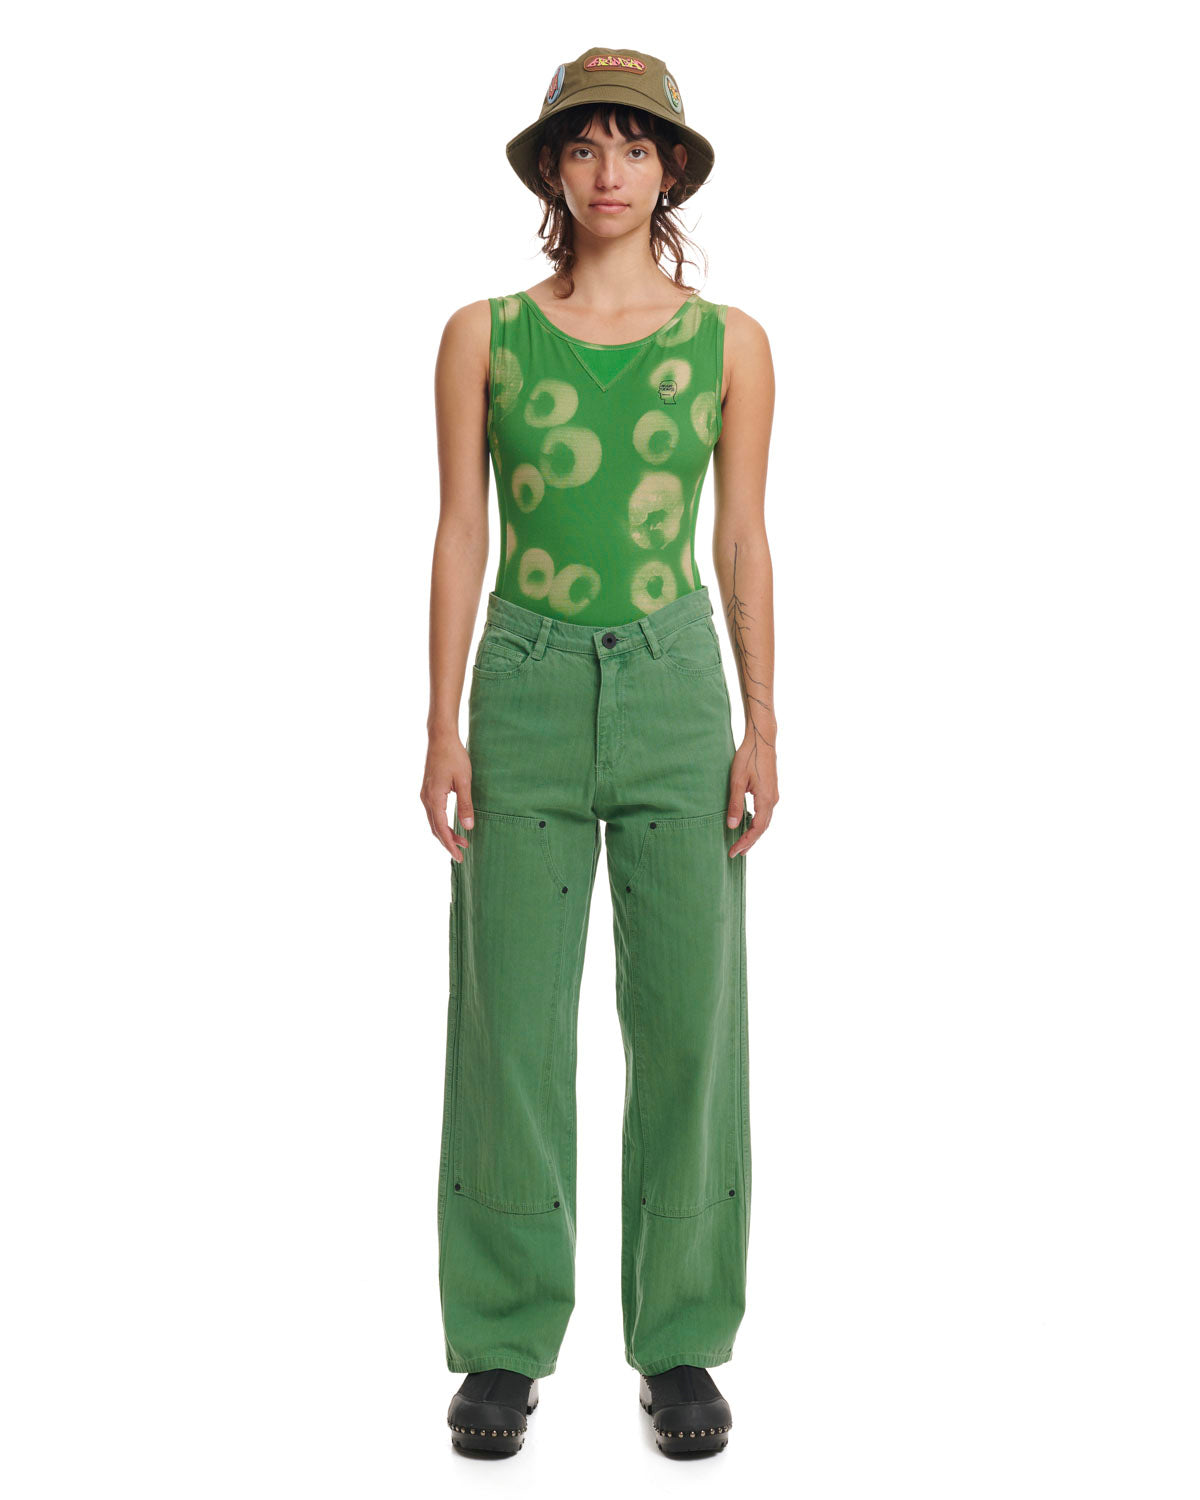 Sponge Dye Bodysuit - Green 4